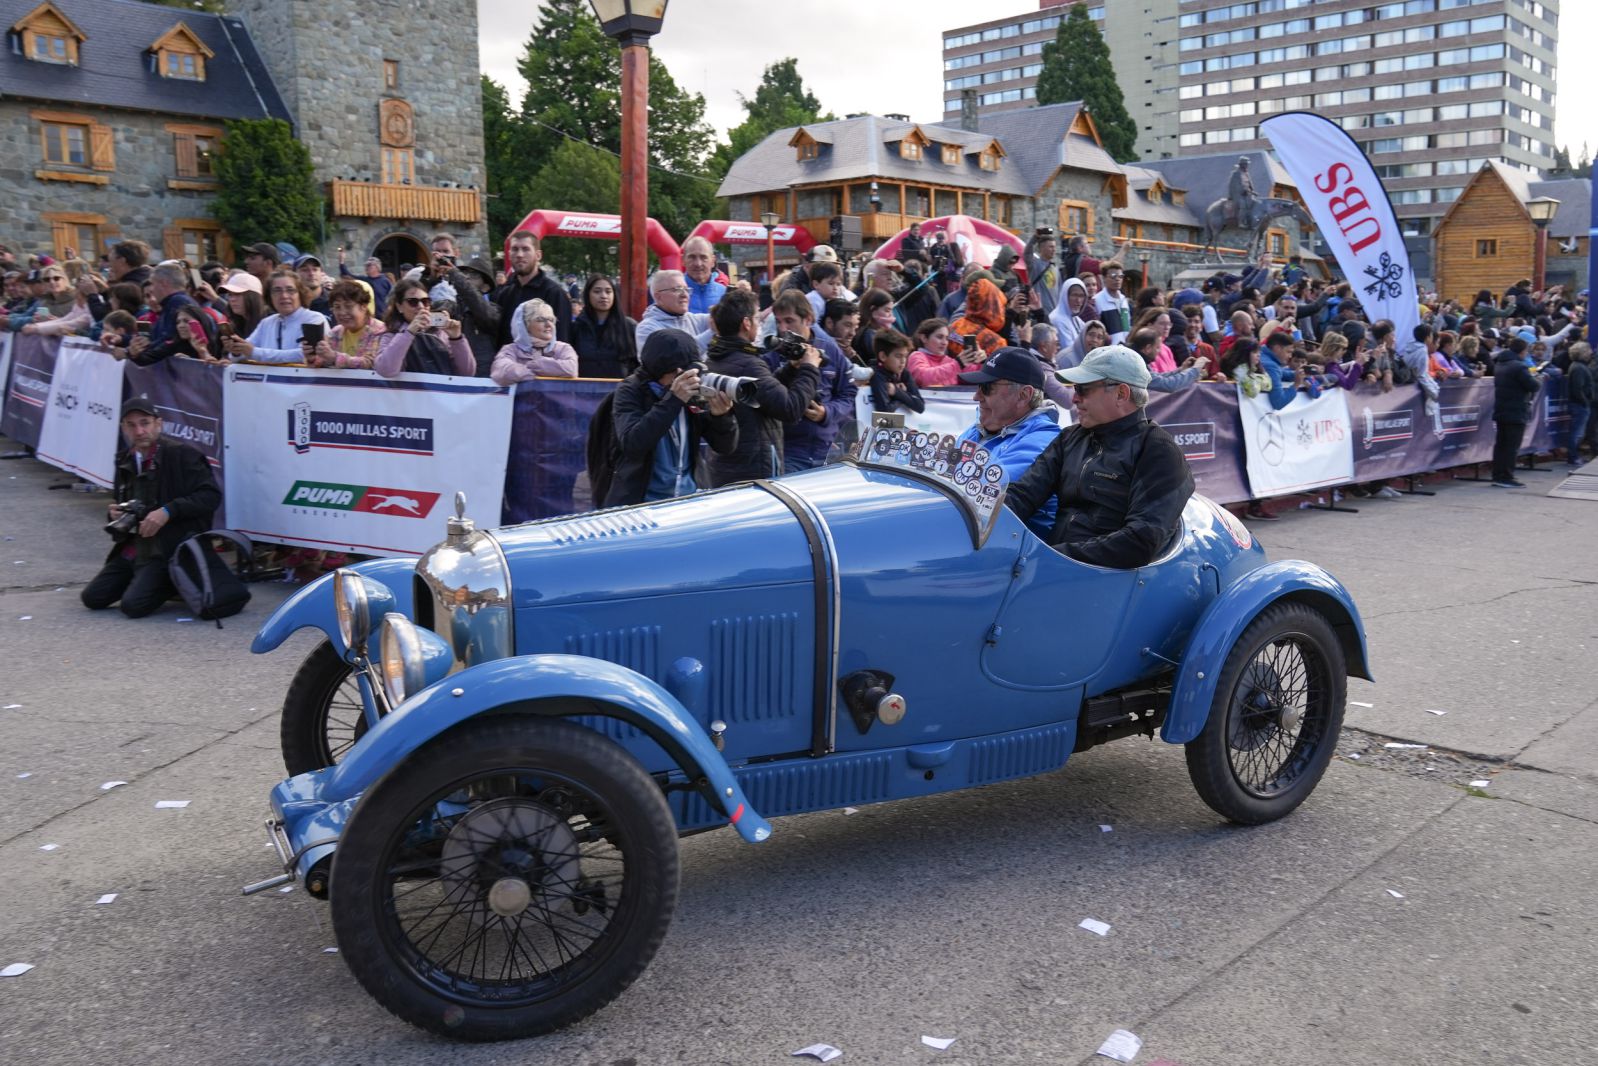 Lanzamiento 1000 Millas Sport: Comenzó la competencia de autos clásicos más destacada de la región